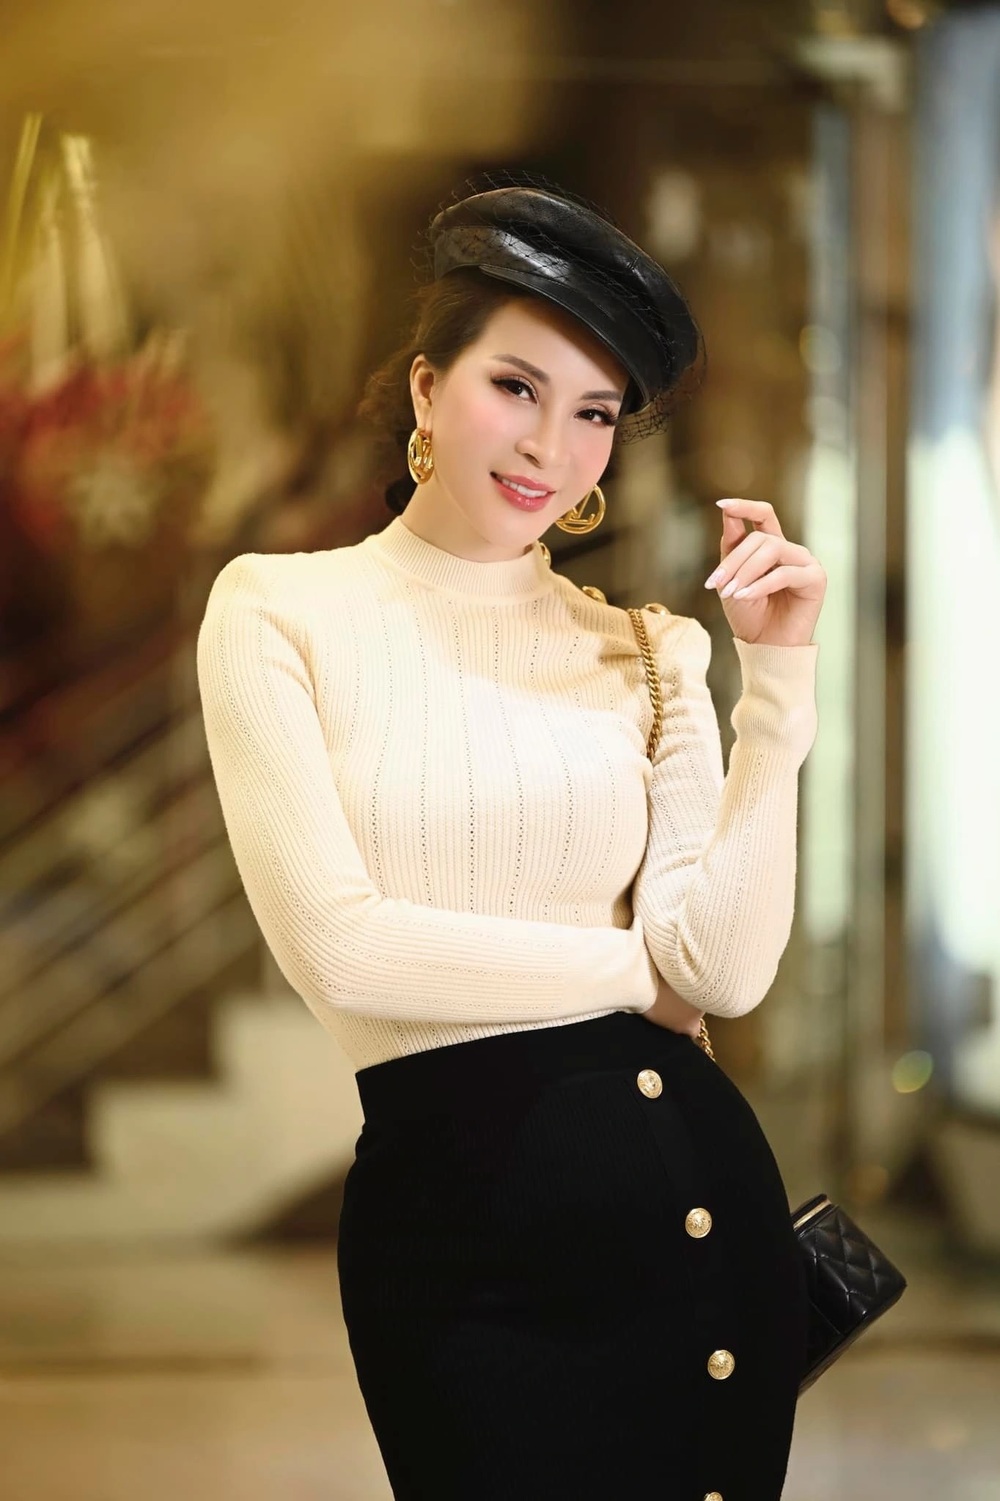 Cuộc sống bí ẩn của á hậu Thanh Mai, nhận mình là hồng nhan bạc tỷ ở tuổi 50 - Ảnh 4.